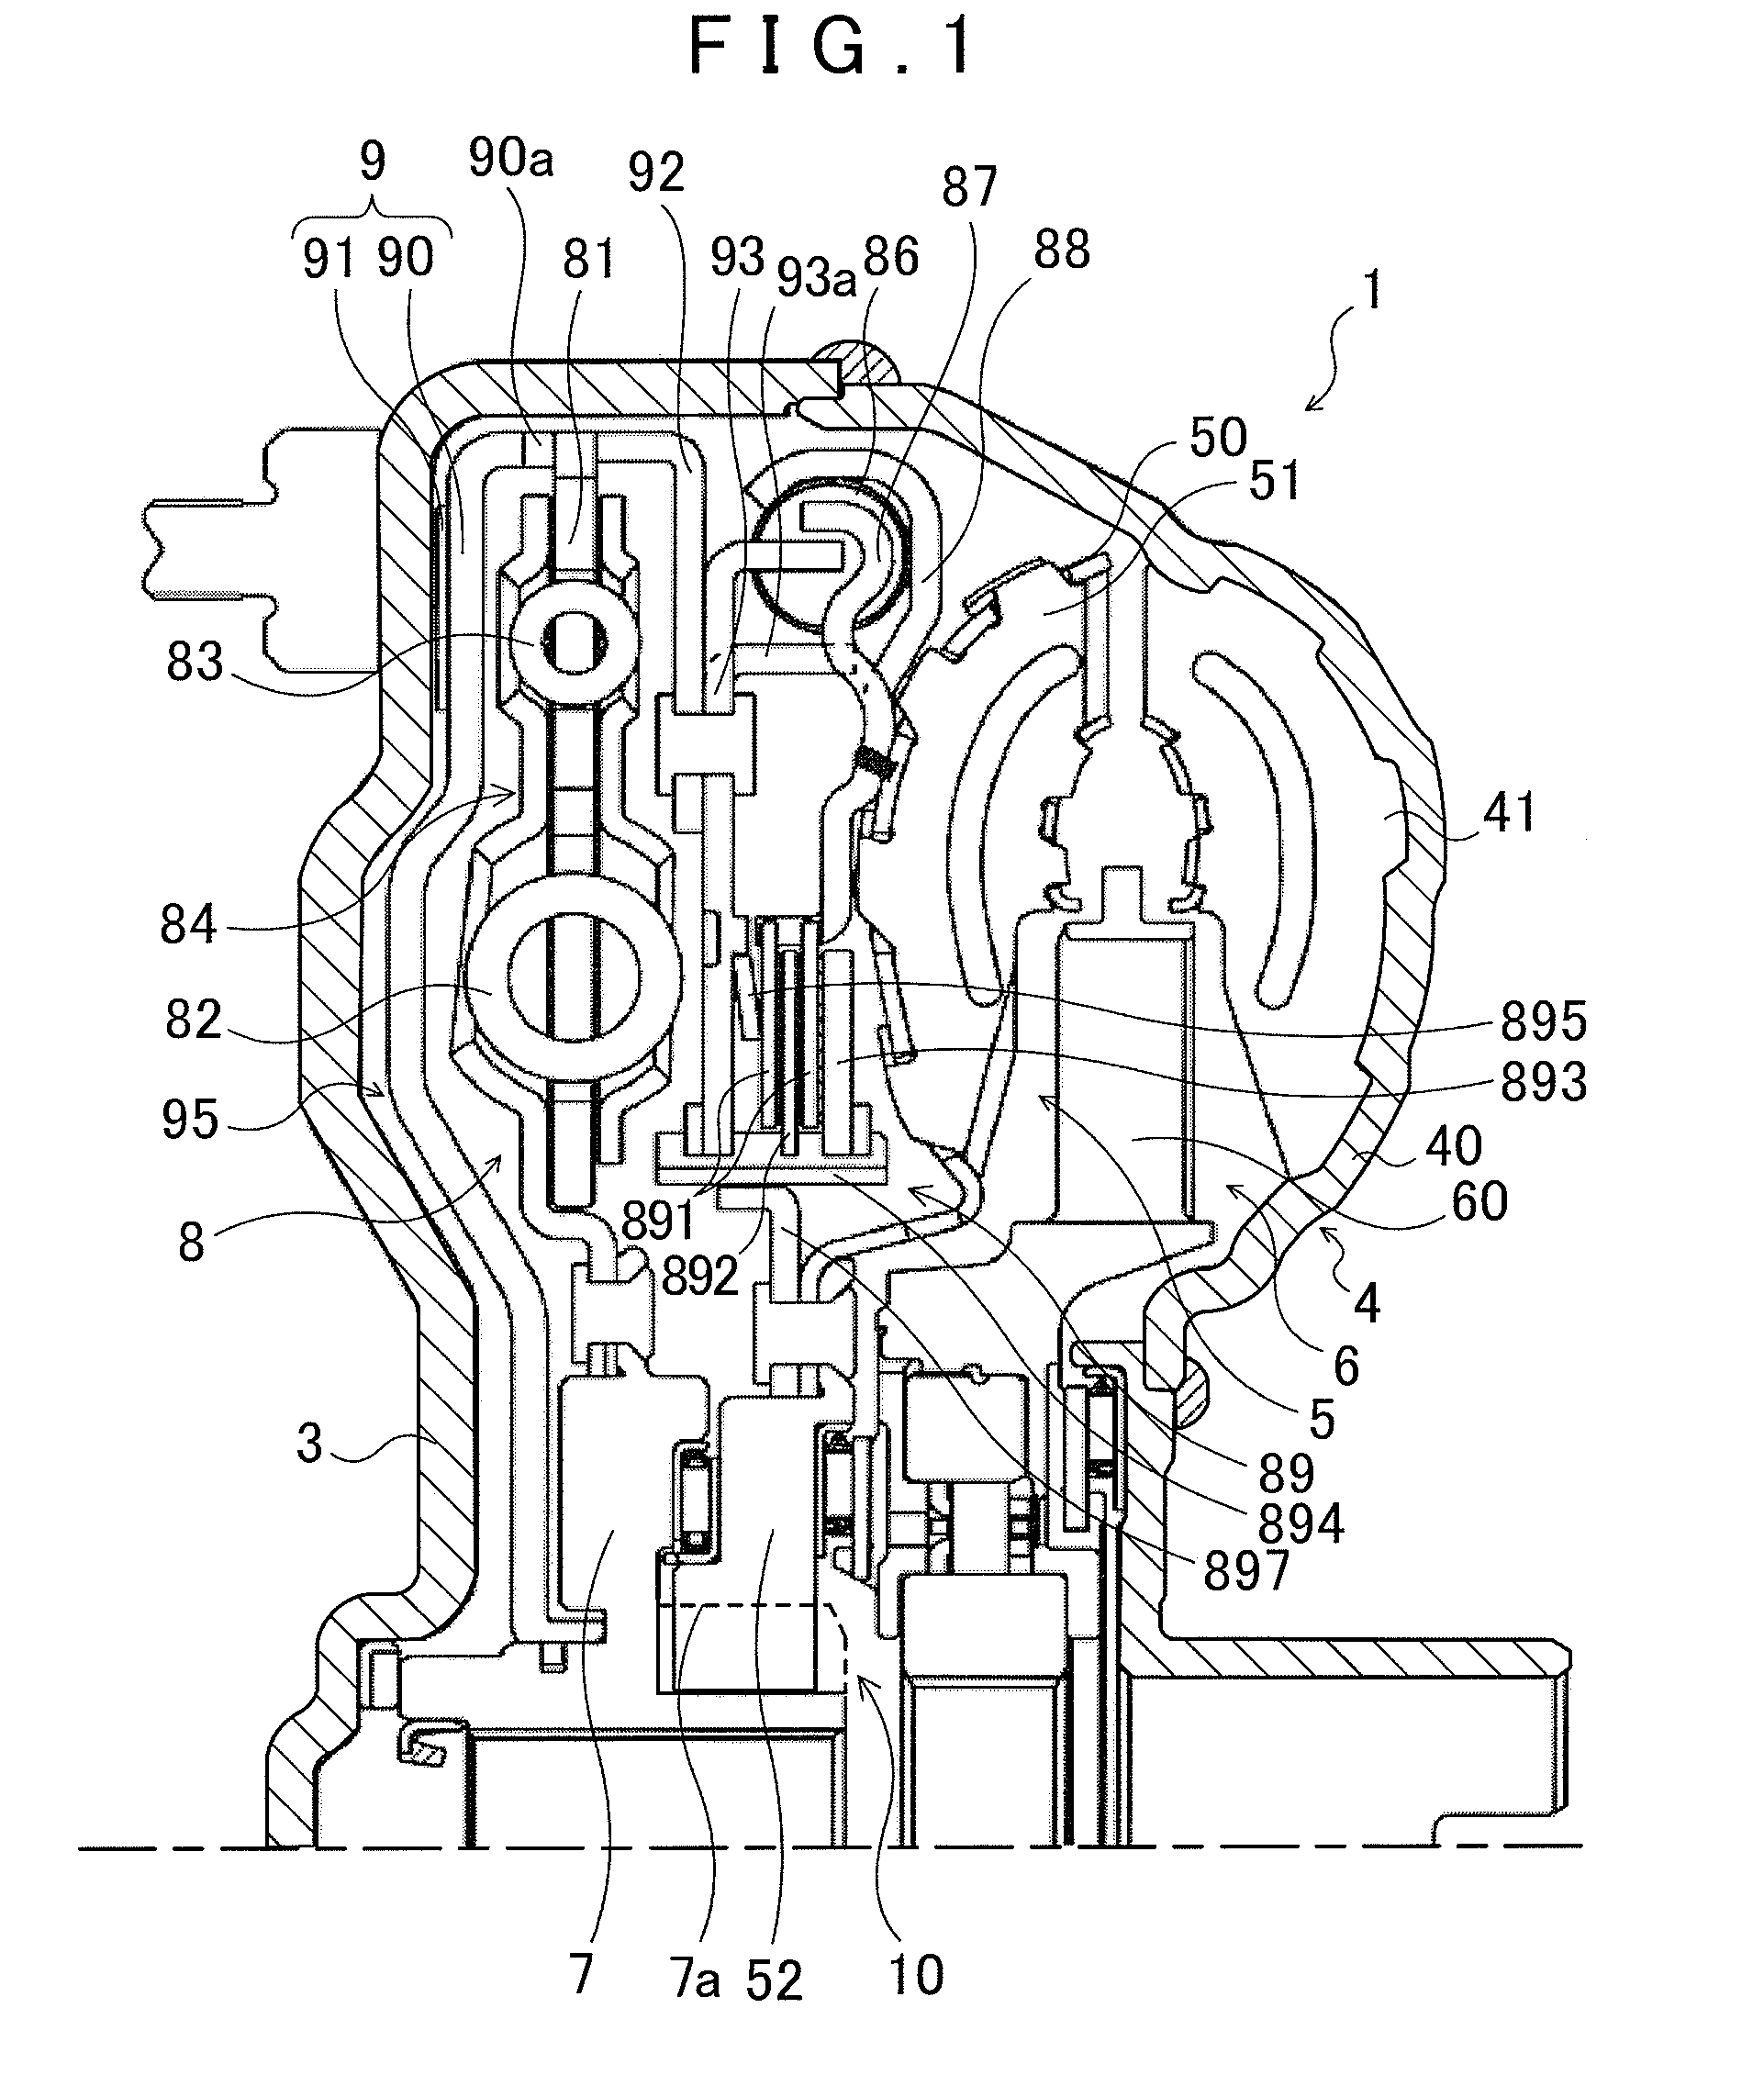 Hydraulic transmission apparatus